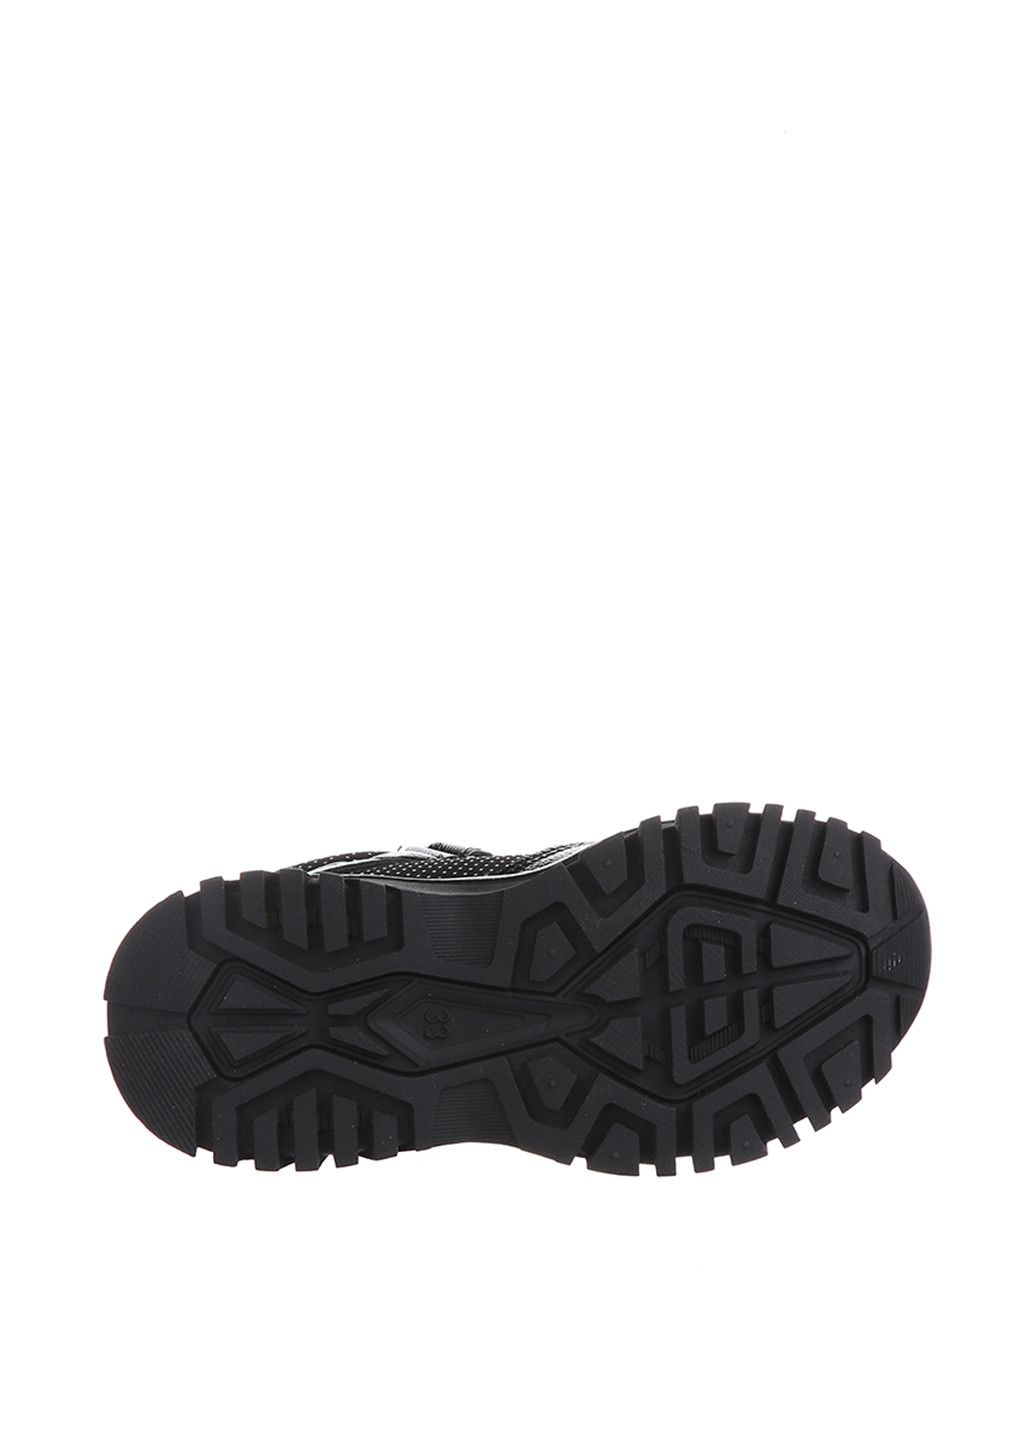 Черные спортивные осенние ботинки Jong Golf